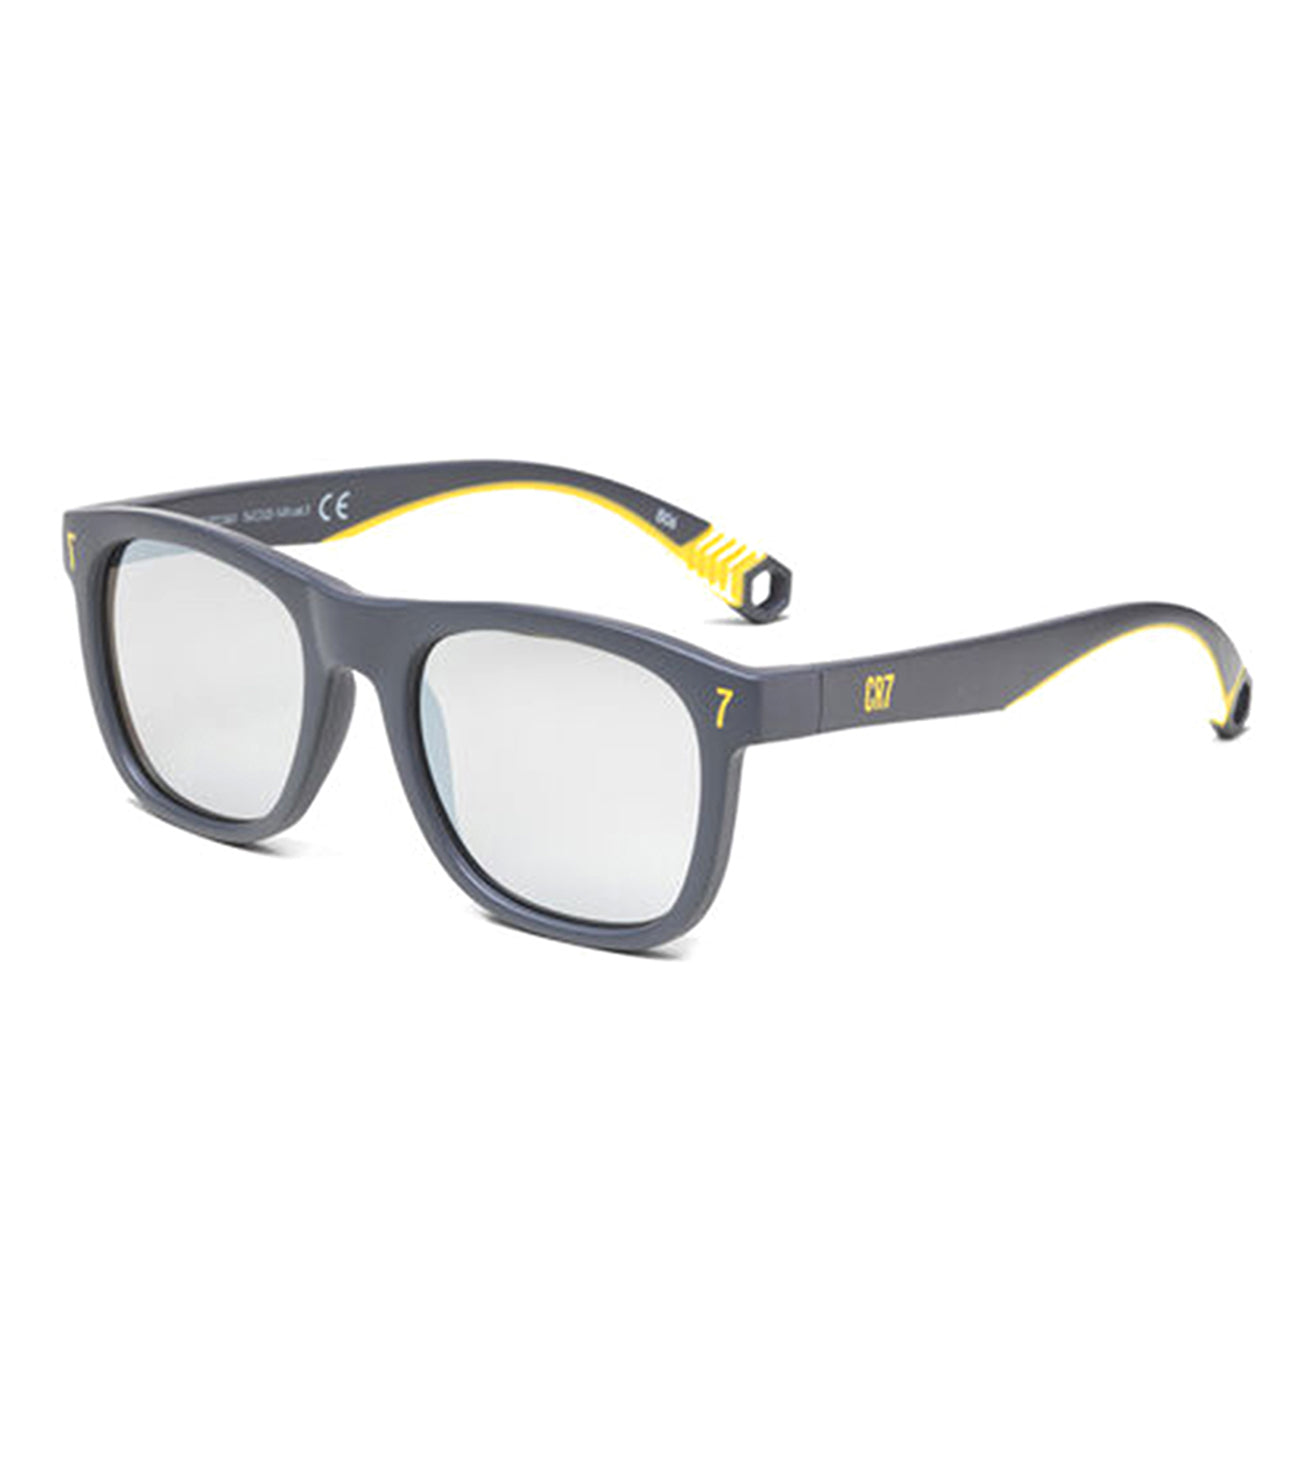 CR7 Unisex Grey Square Sunglasses